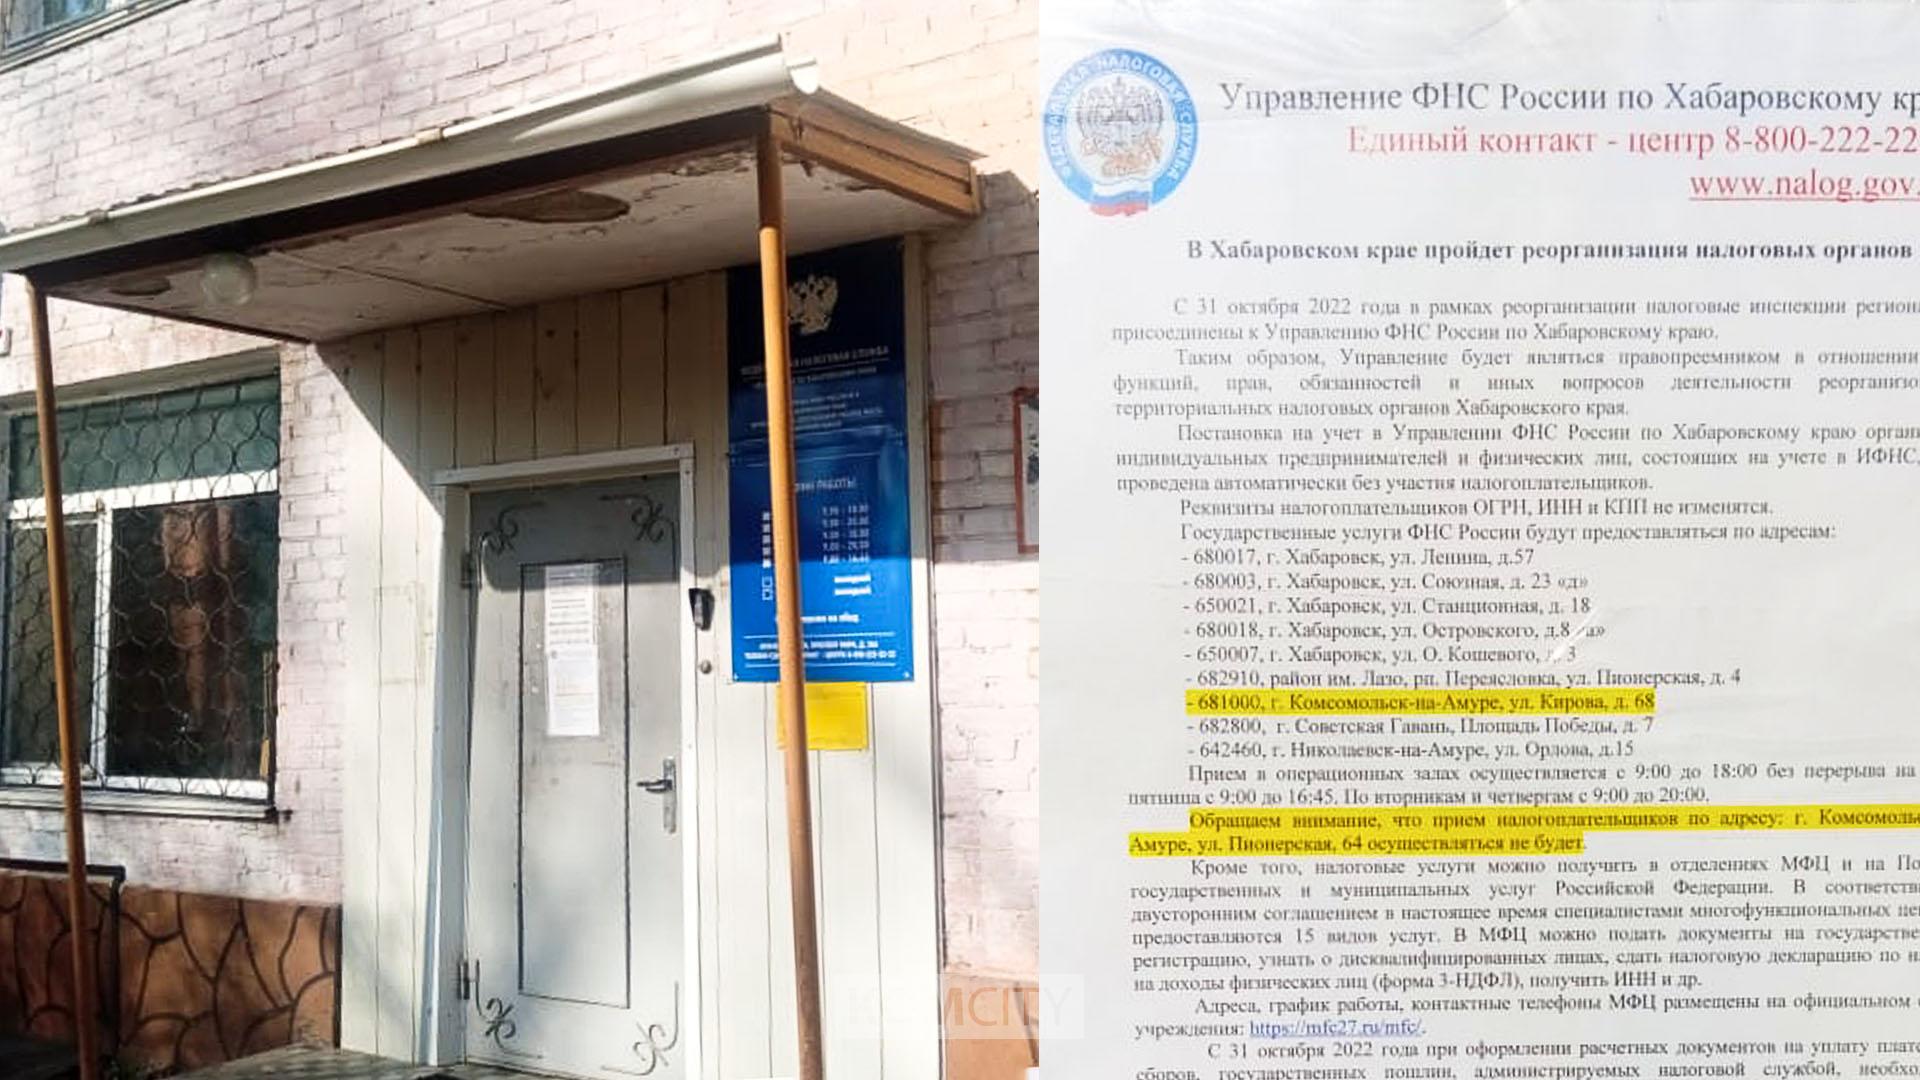 Амурчанам придётся решать налоговые вопросы в Комсомольске — отделение налоговой инспекции в Амурске закрывается